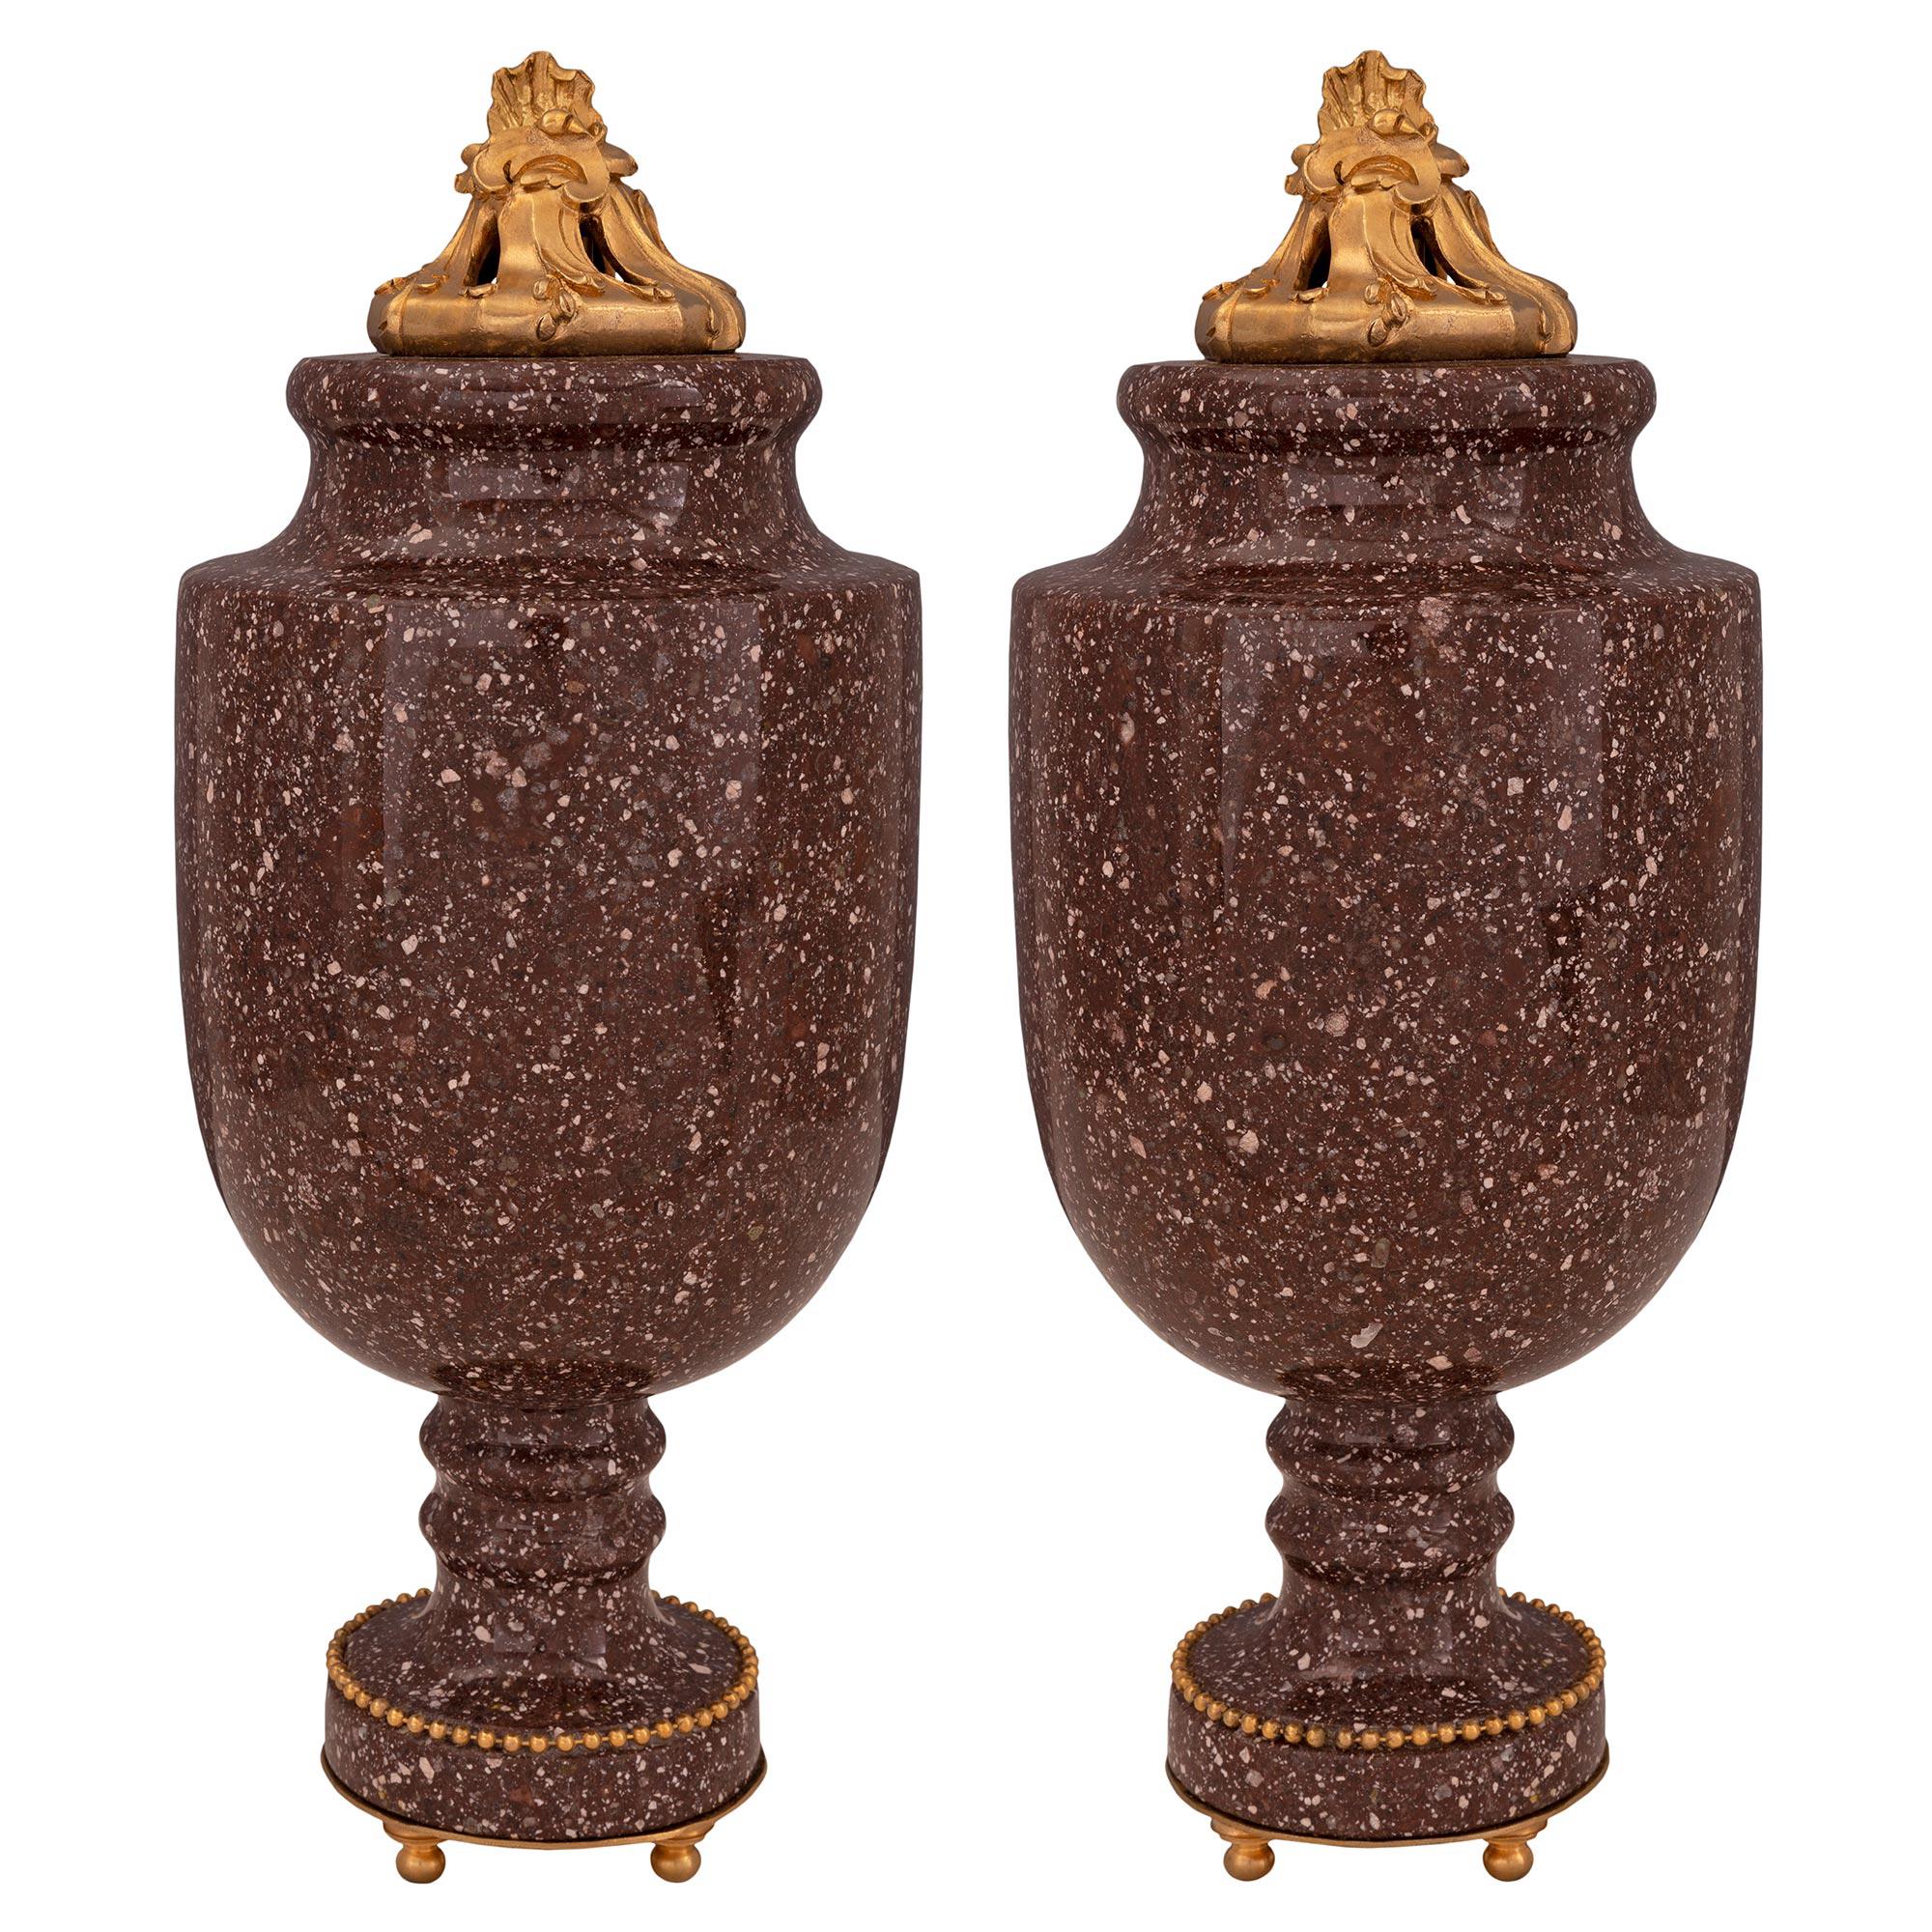 Paire d'urnes à couvercle en porphyre et bronze doré de style néoclassique français du 19ème siècle